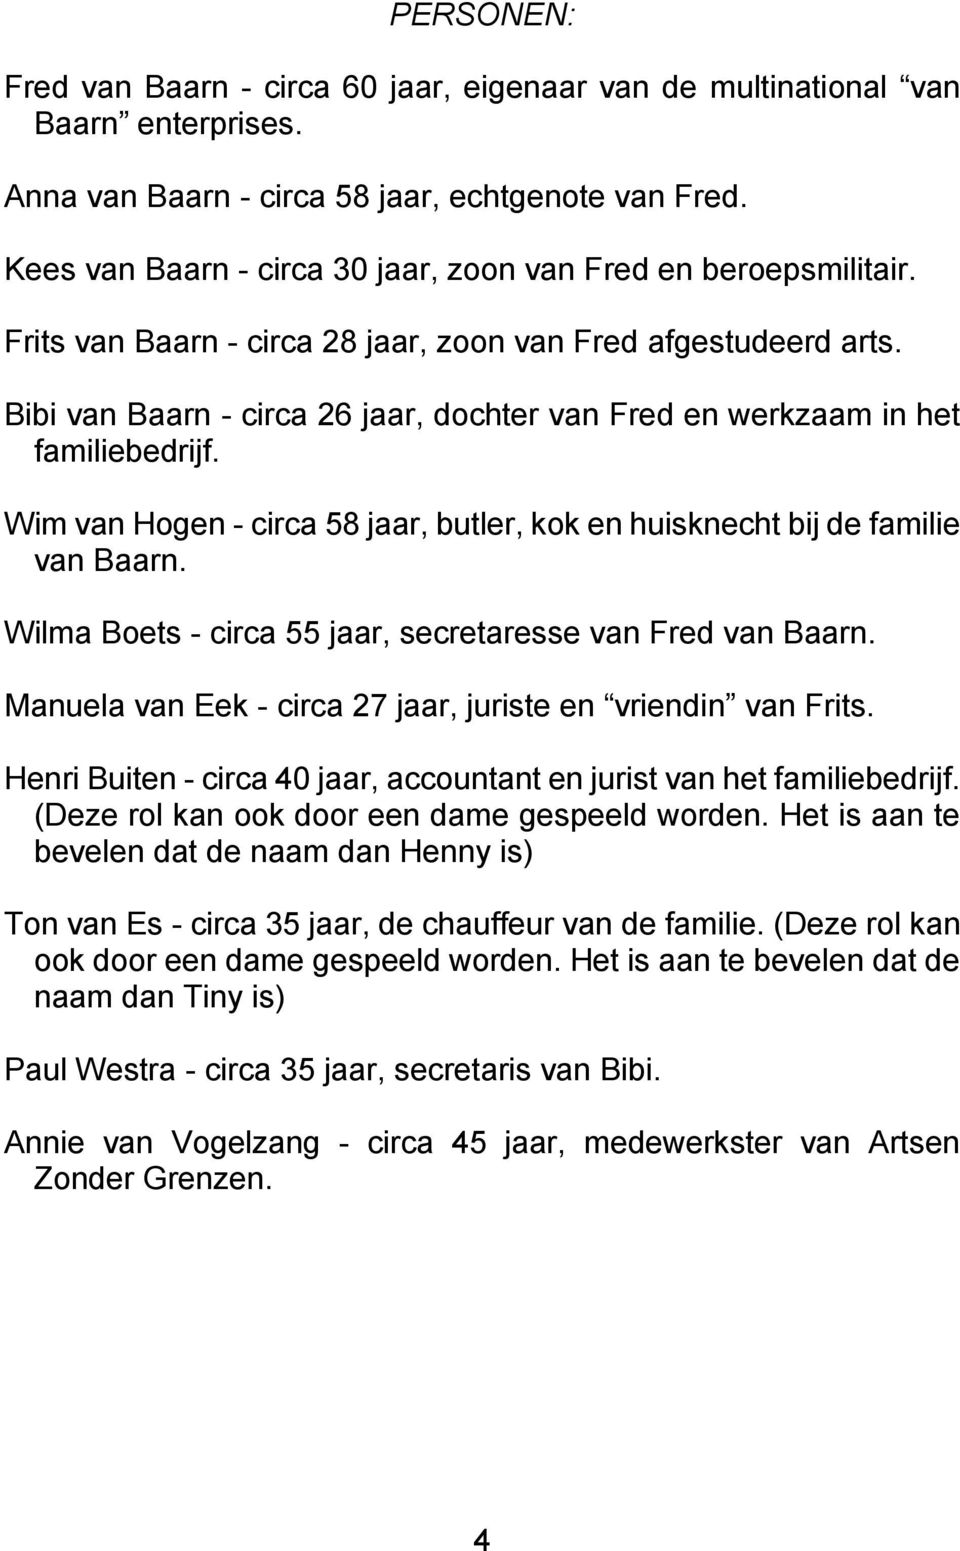 Bibi van Baarn - circa 26 jaar, dochter van Fred en werkzaam in het familiebedrijf. Wim van Hogen - circa 58 jaar, butler, kok en huisknecht bij de familie van Baarn.